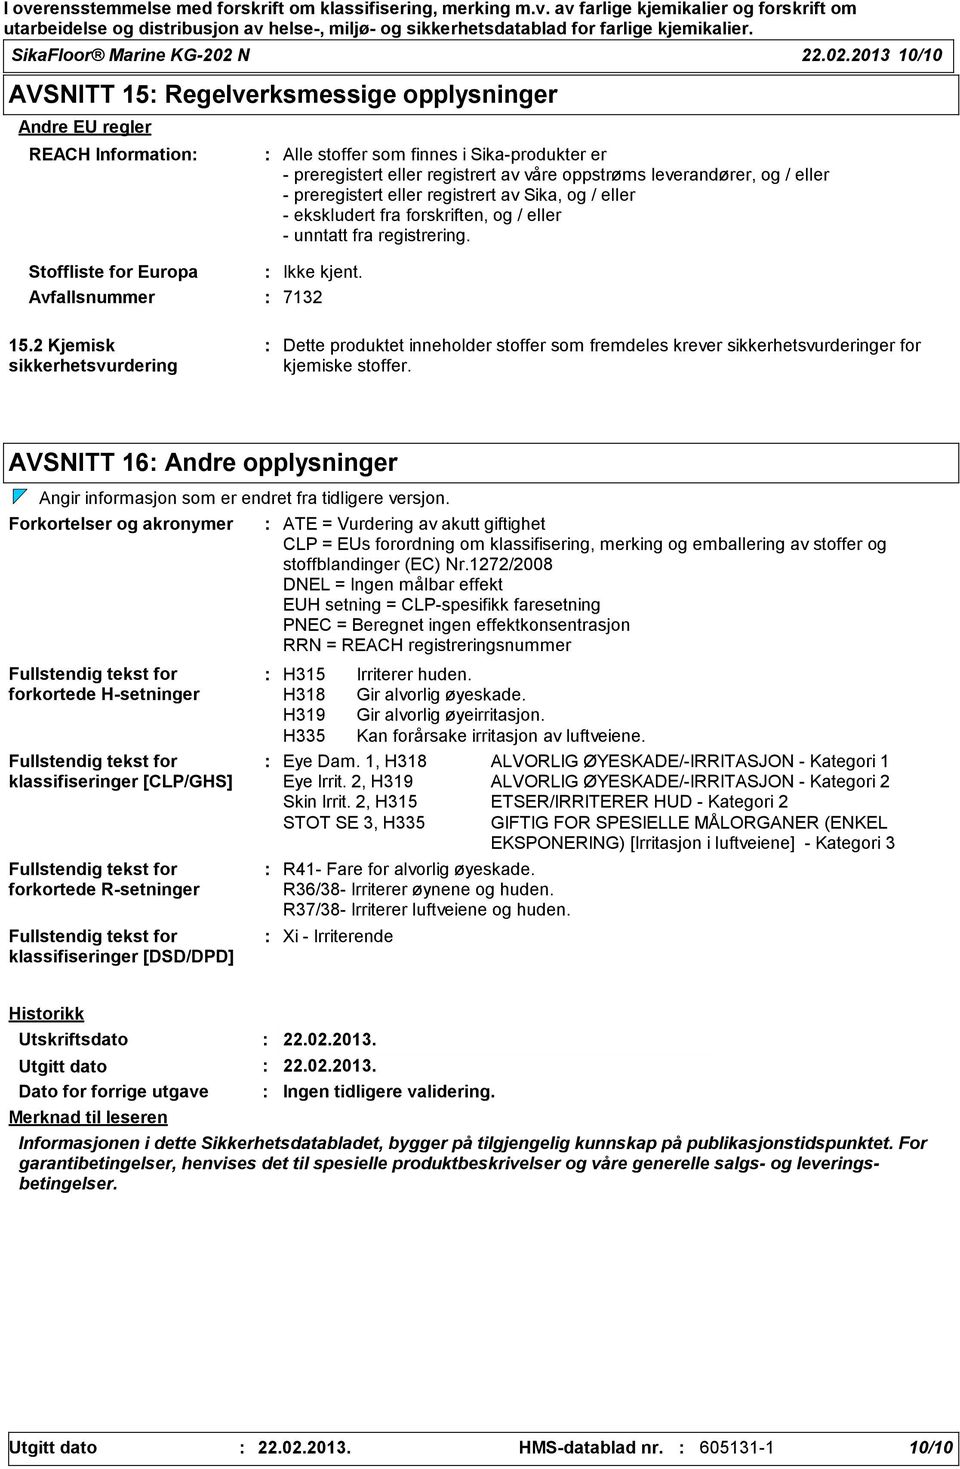 2013 10/10 AVSNITT 15 Regelverksmessige opplysninger Andre EU regler REACH Information Stoffliste for Europa Avfallsnummer 7132 Alle stoffer som finnes i Sikaprodukter er preregistert eller